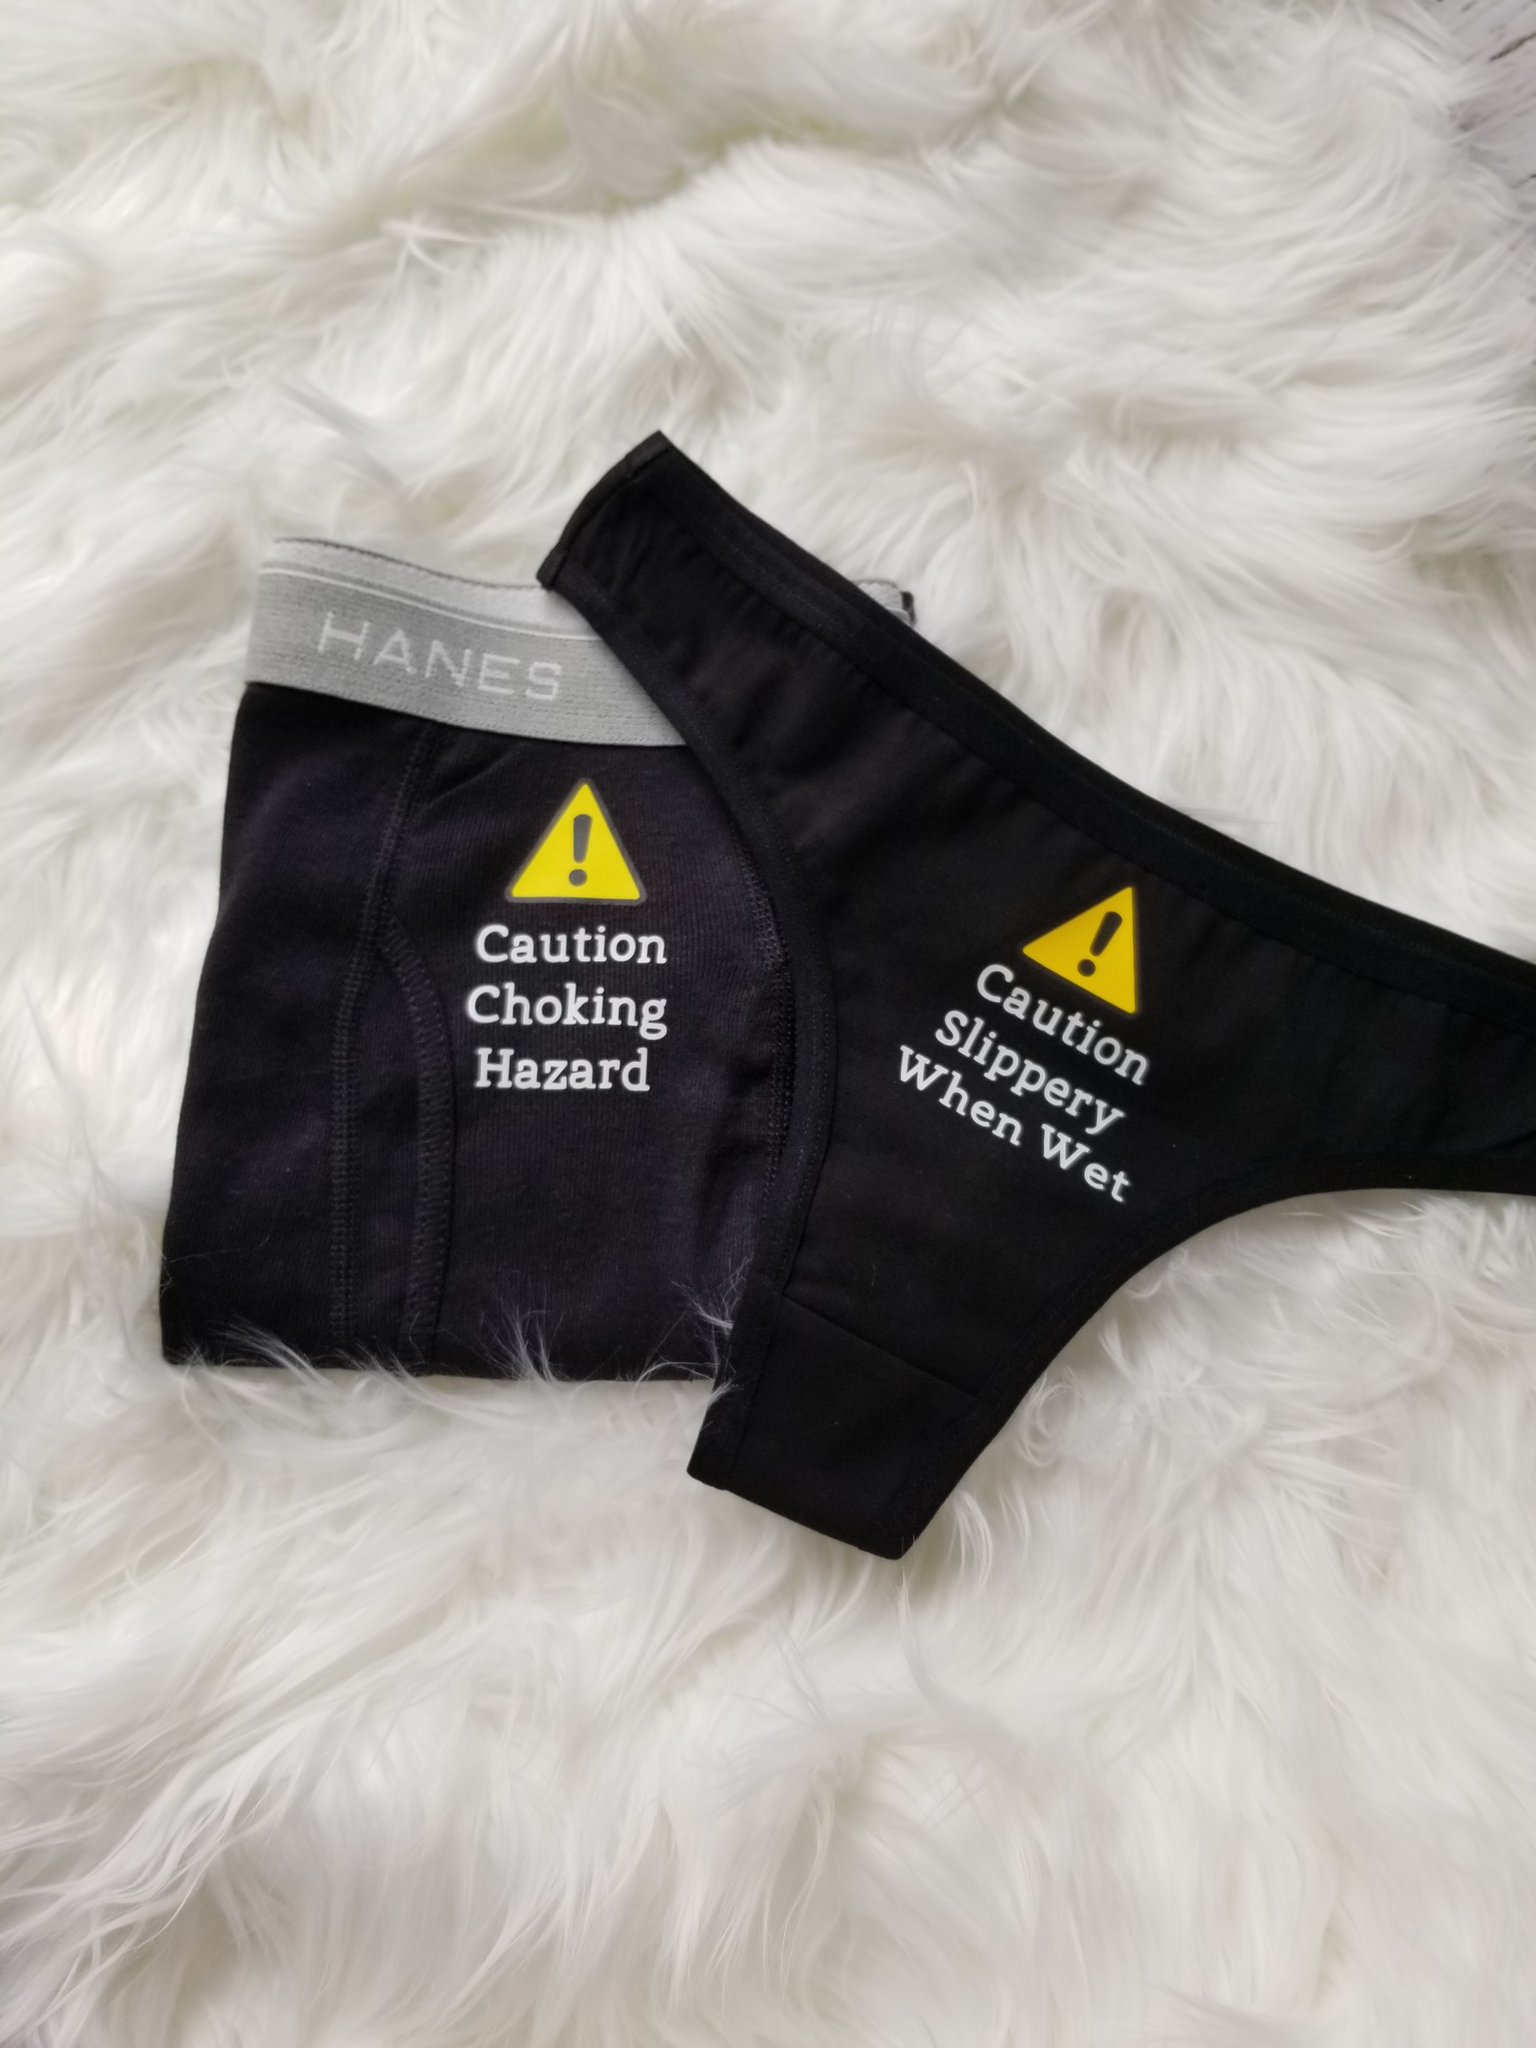 Matching Couples Underwear, Caution Slippery When Wet & Caution Chokin –  Vulpine Vinyls